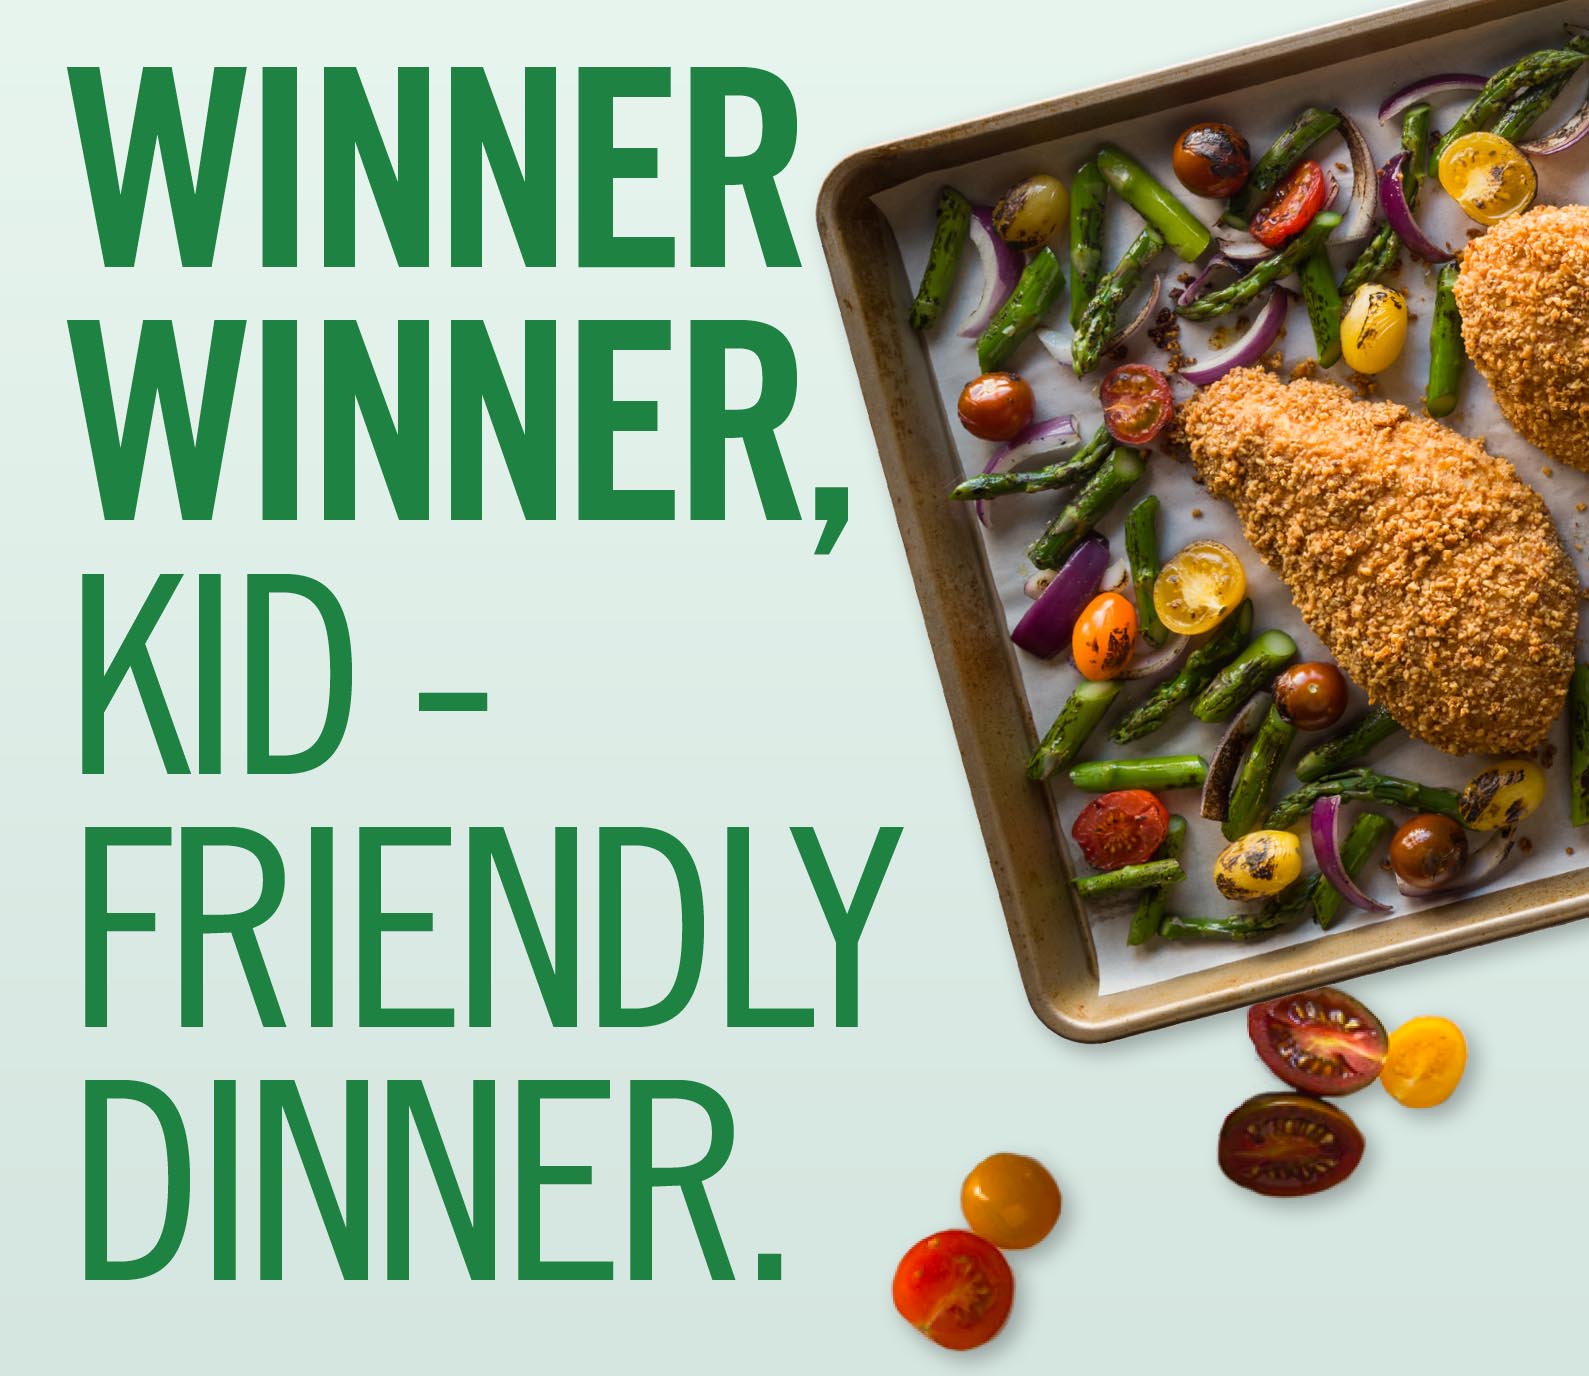 Winner winner, kid-friendly dinner